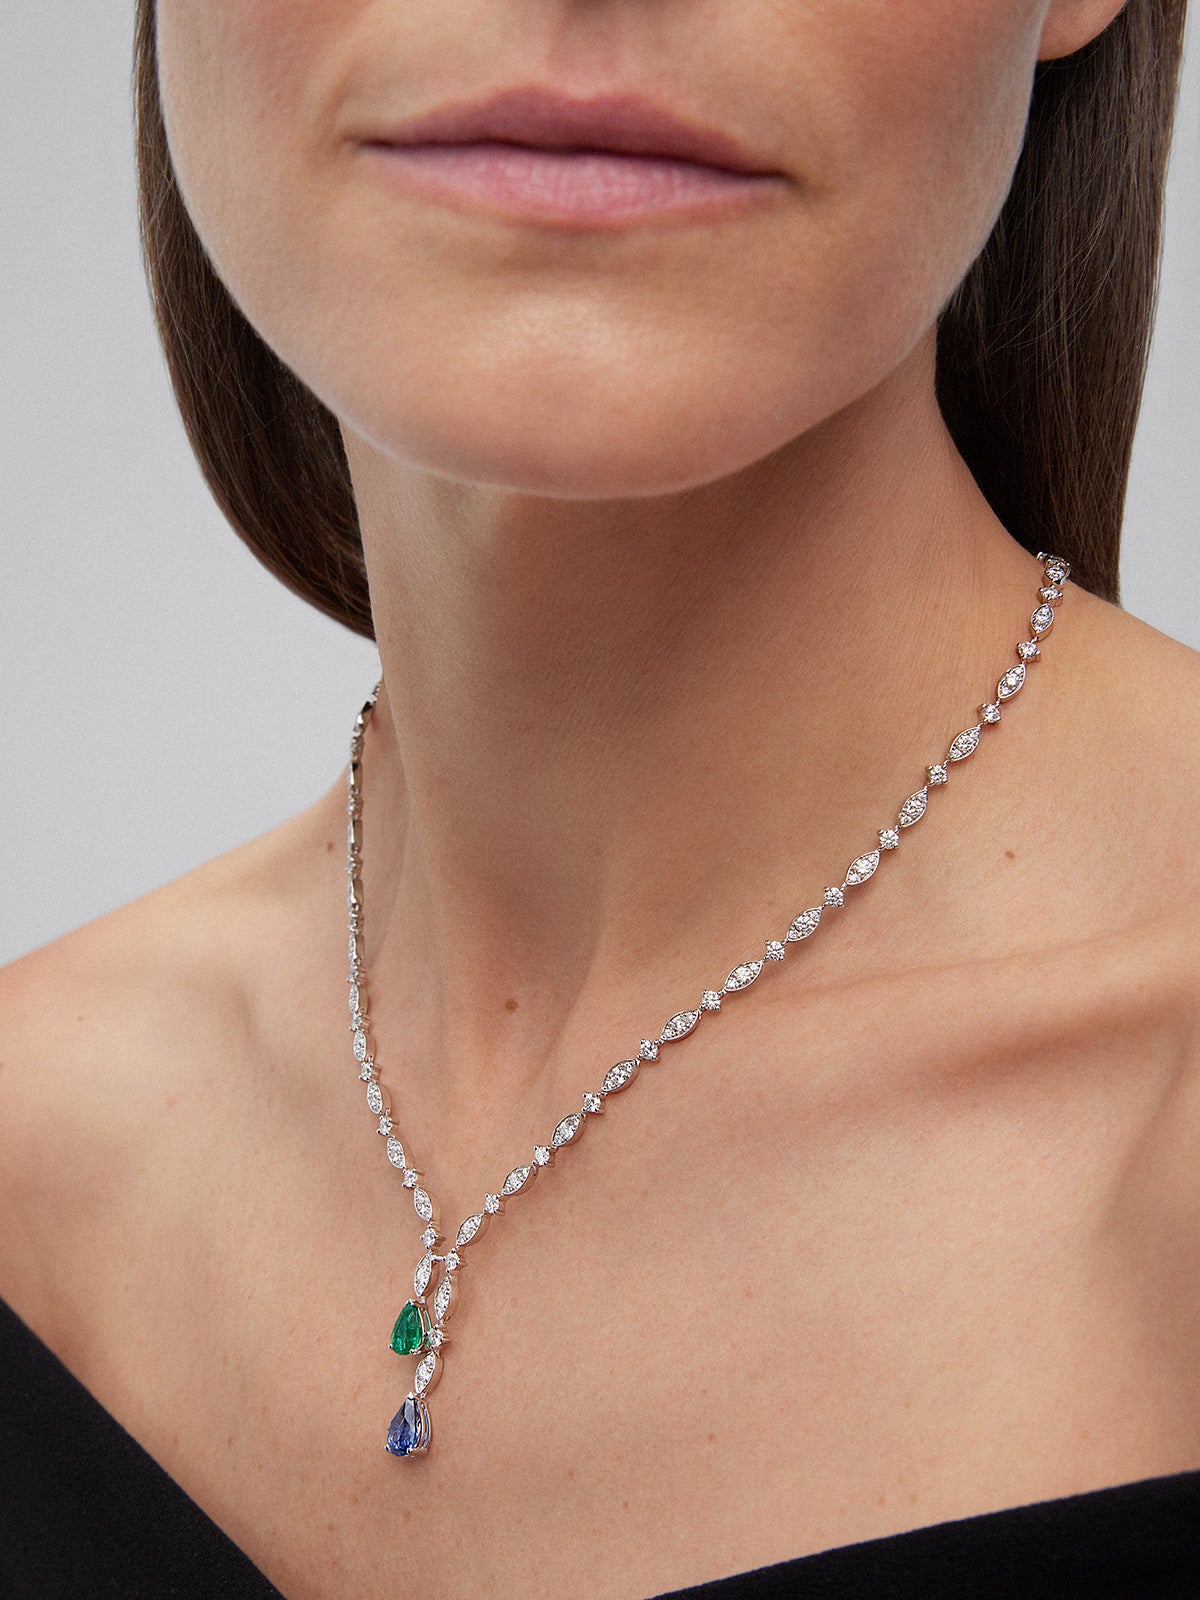 Collar de oro blanco de 18K con zafiro azul intenso en talla pera de 1,76 cts, esmeralda verde en talla pera de 0,96 cts y 163 diamantes en talla brillante con un total de 6,48 cts